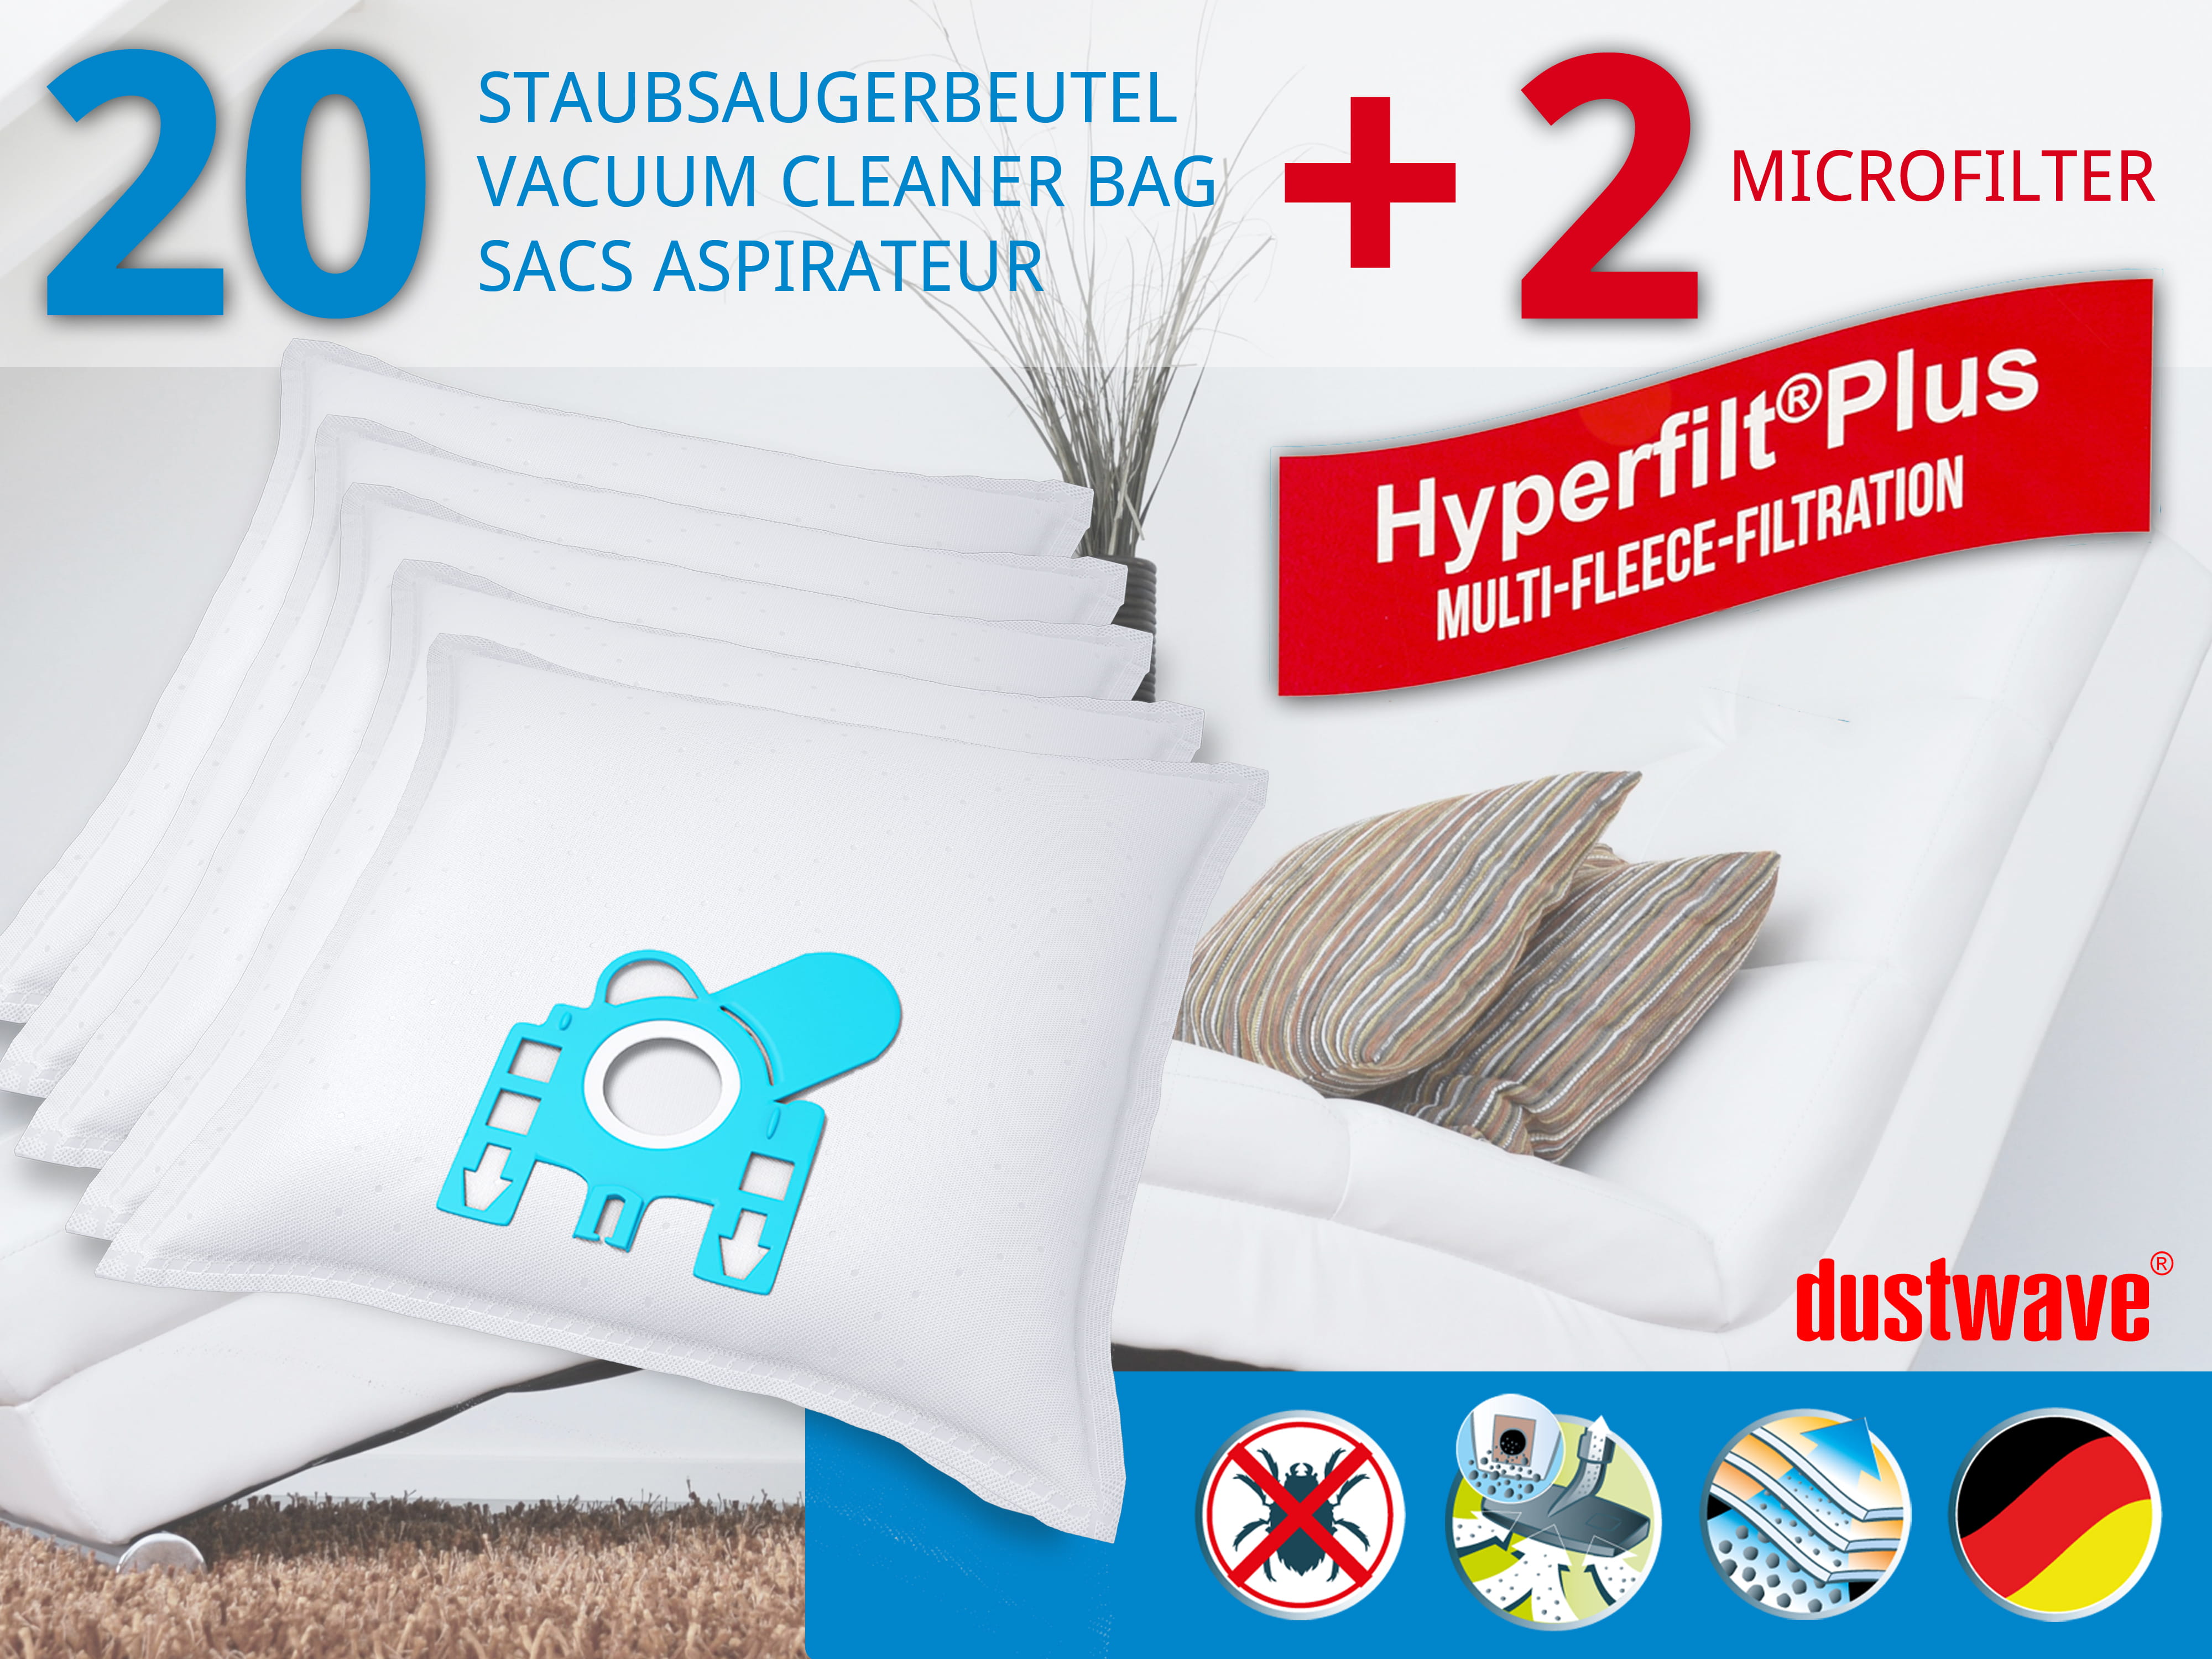 Dustwave® 20 Staubsaugerbeutel für Hoover T4405 / TRT4405 - hocheffizient, mehrlagiges Mikrovlies mit Hygieneverschluss - Made in Germany